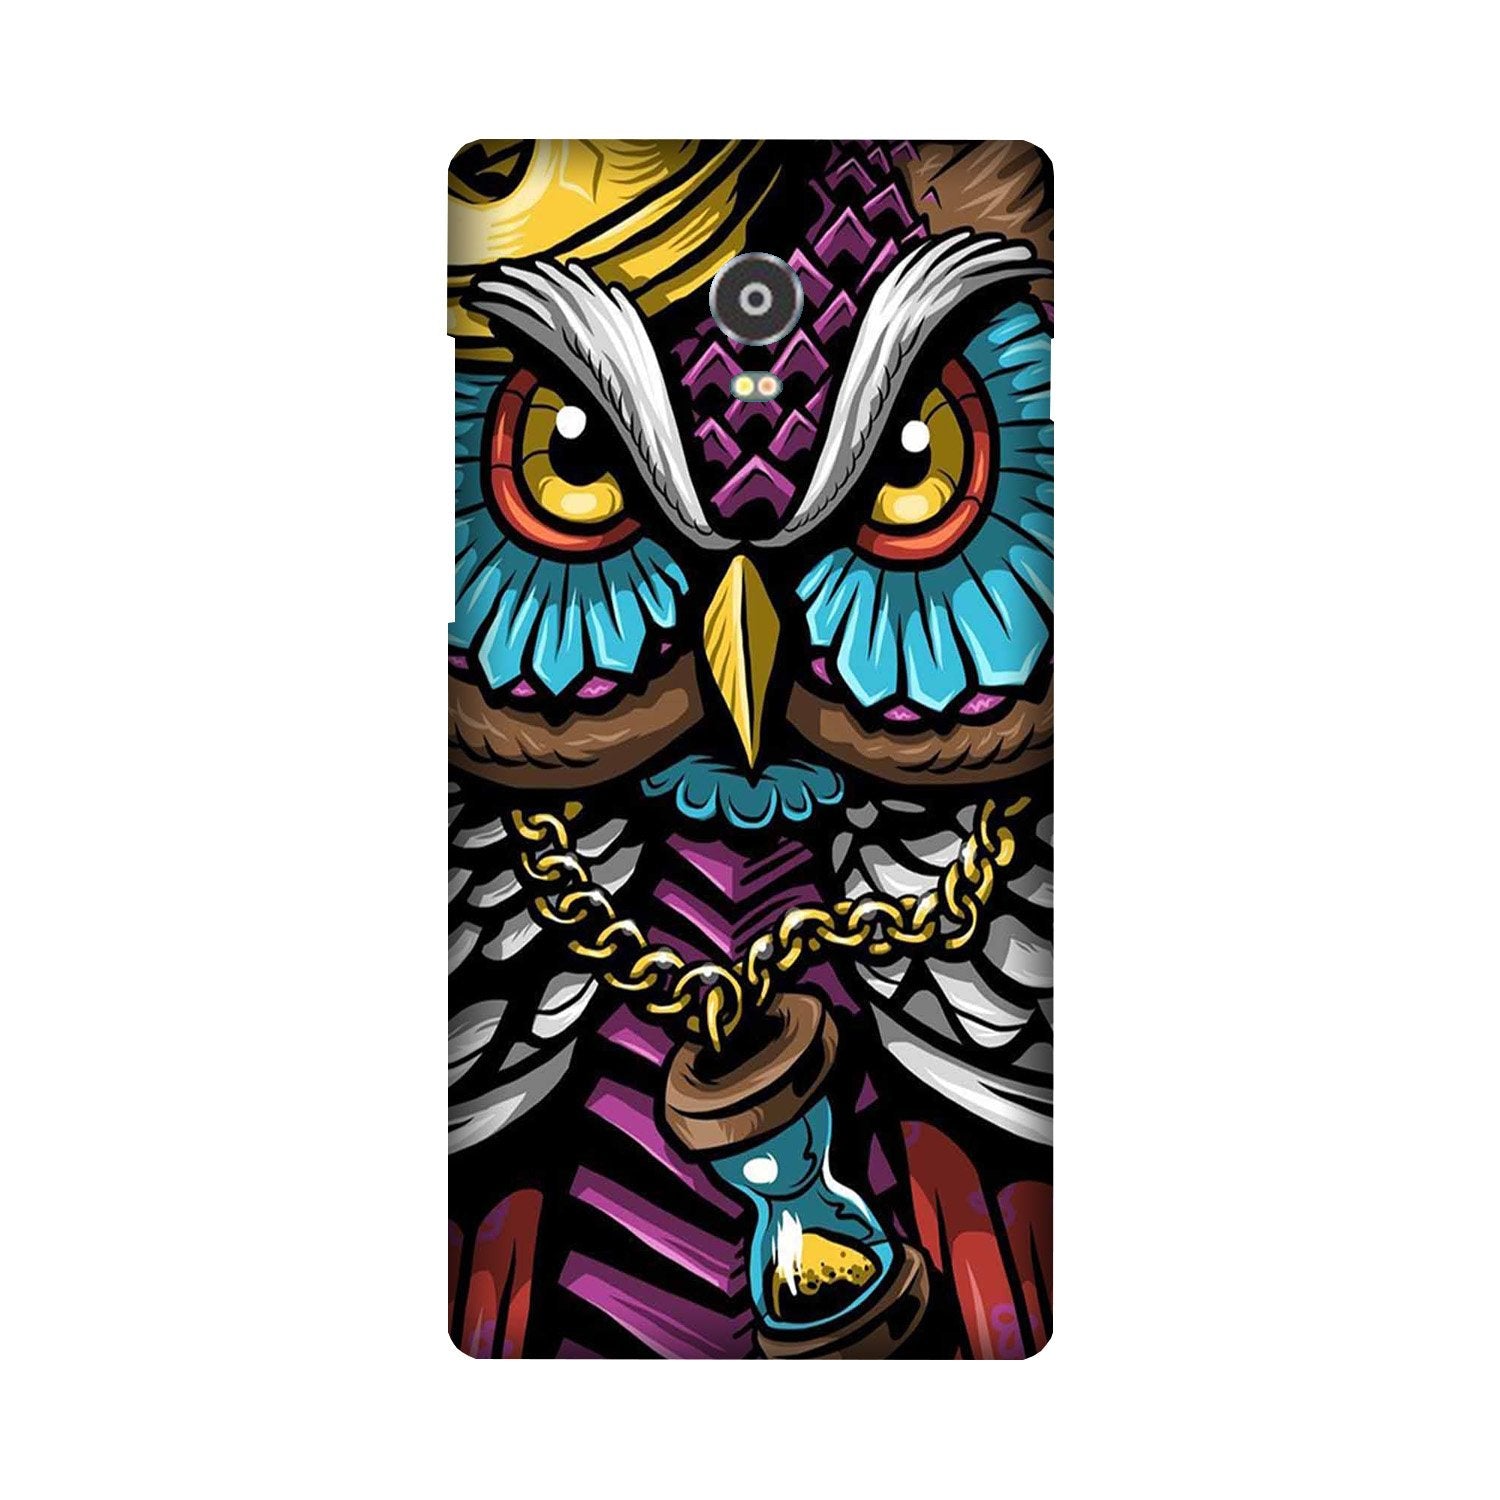 Owl Mobile Back Case for Lenovo Vibe P1 (Design - 359)